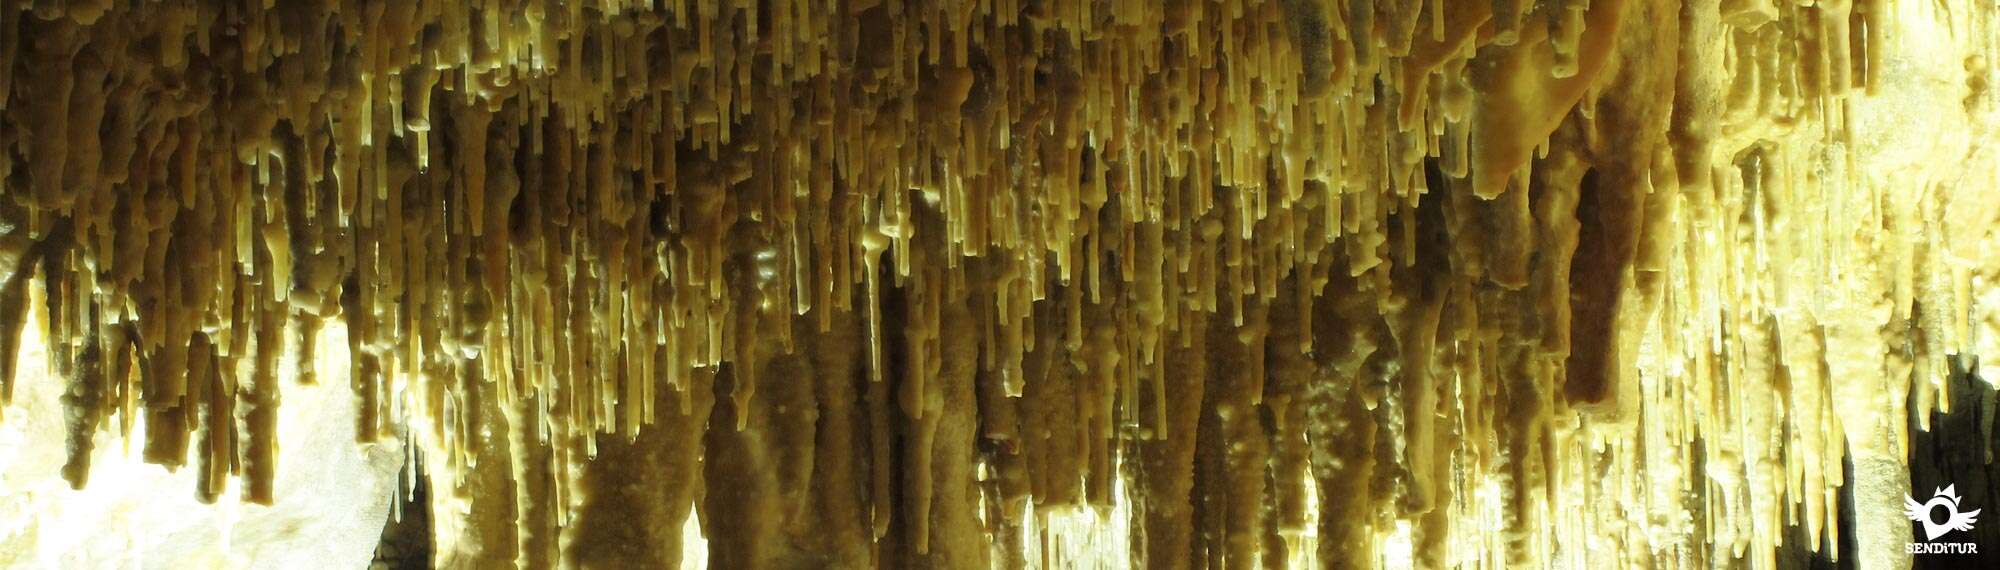 Caves of Ortigosa